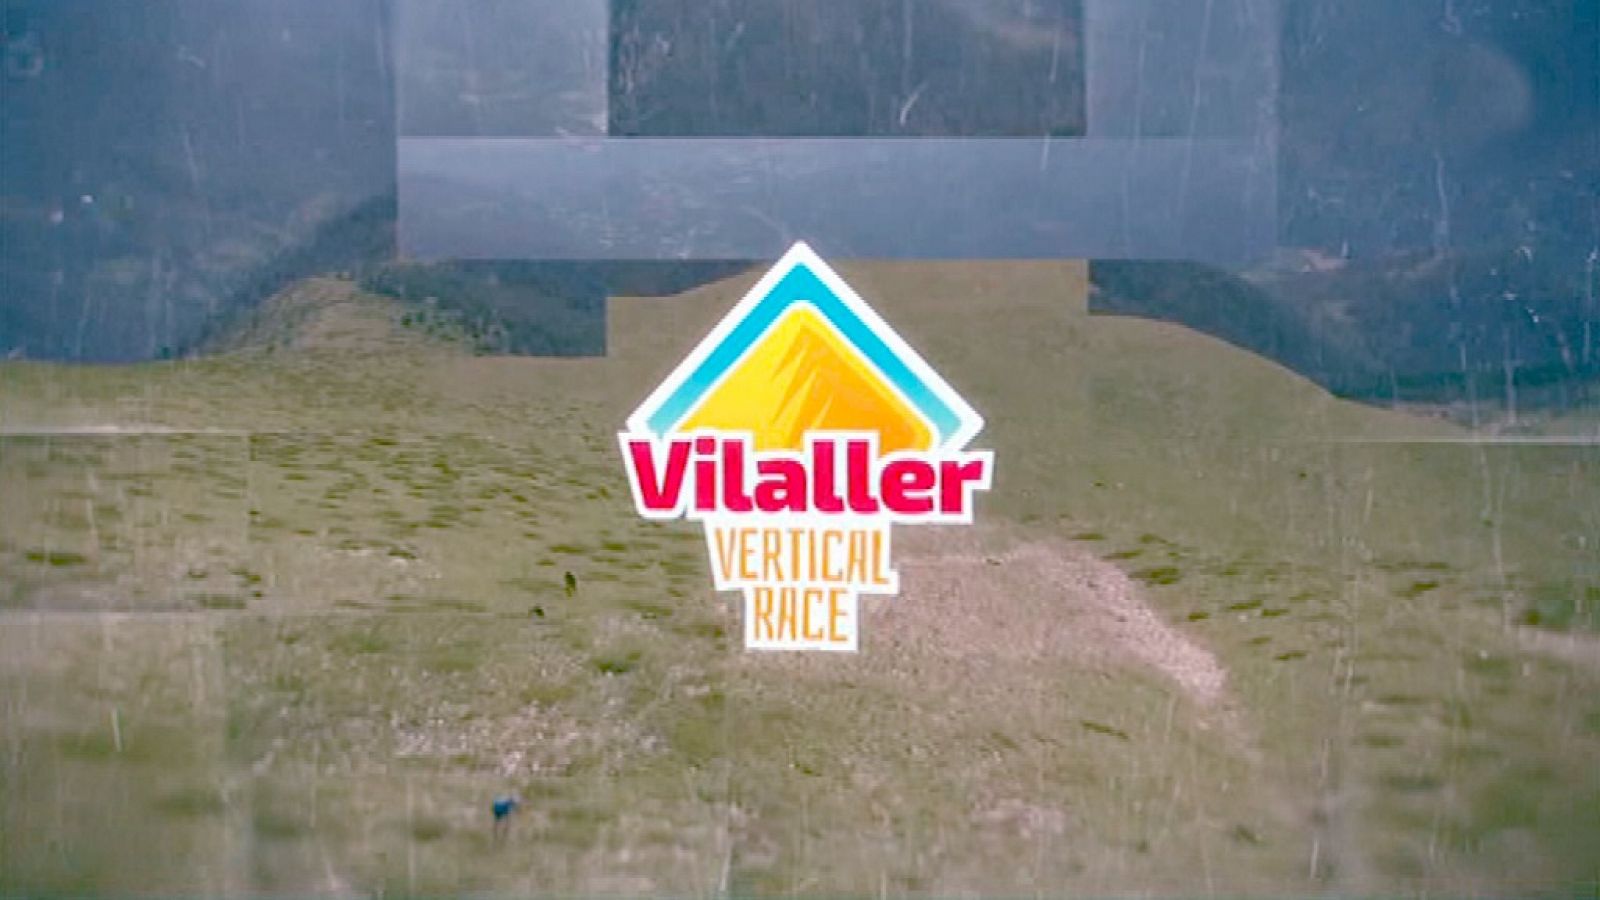 Carrera de montaña - Vilaller Vertical Race 2018